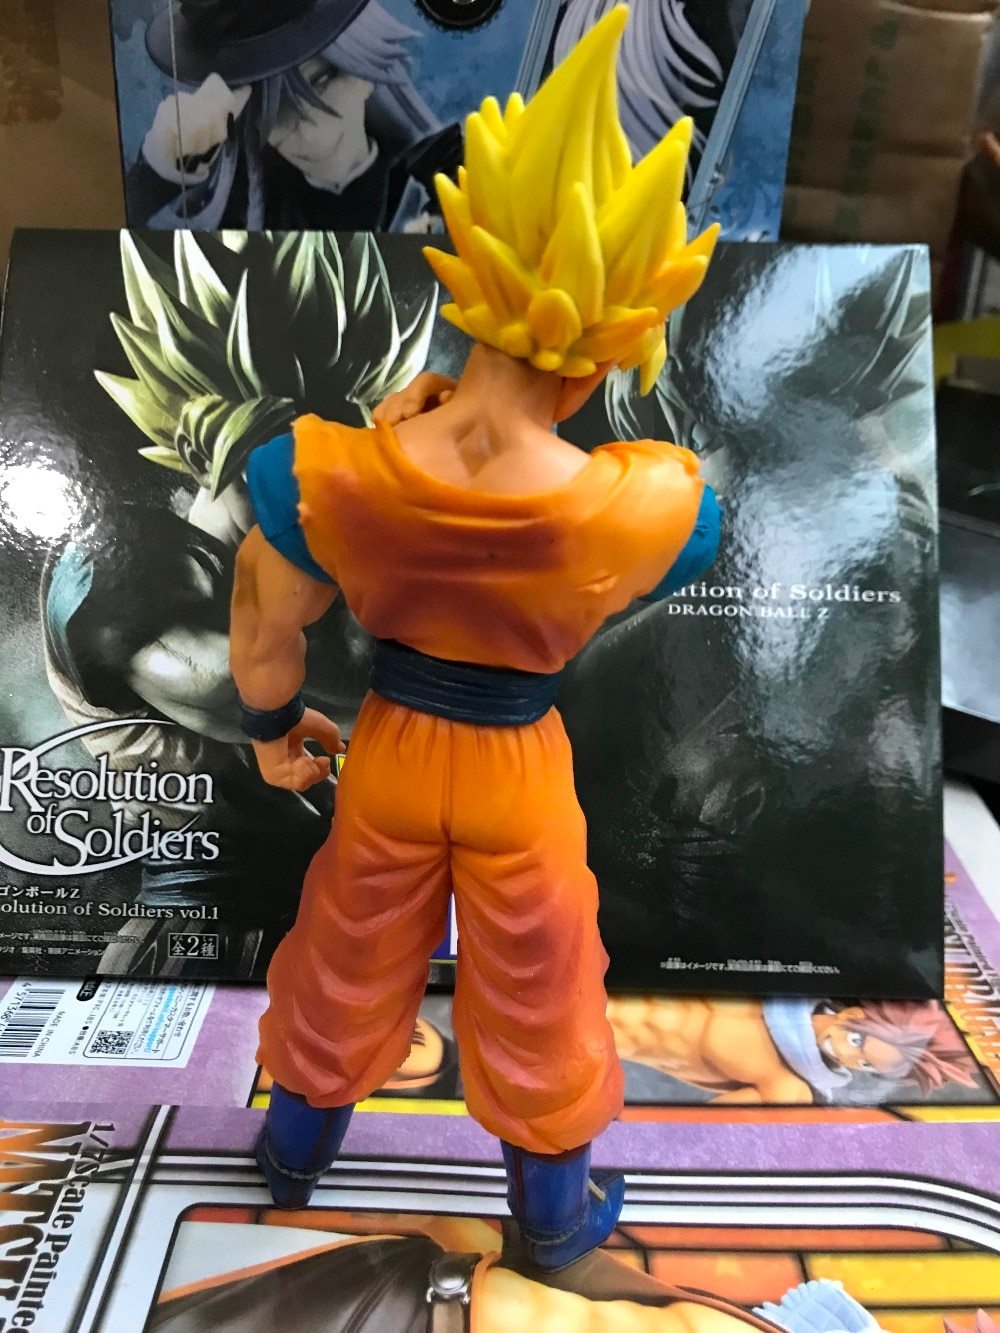 Goku Super Saiyan Figurine - nintendo-core